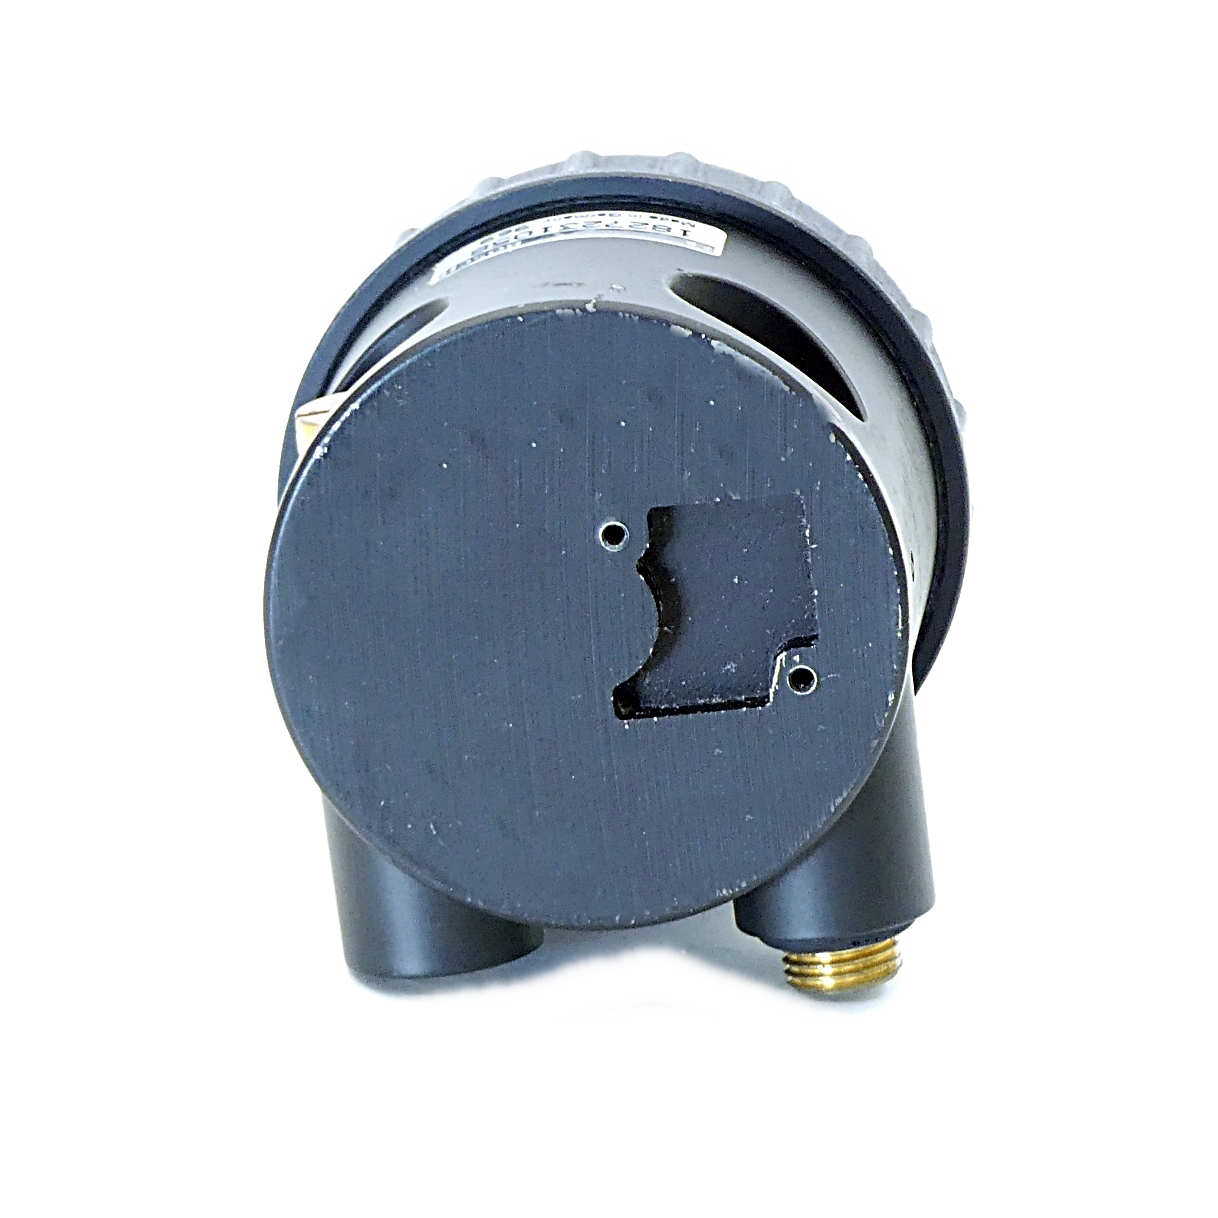 Pressure indicator, differential pressure meter 